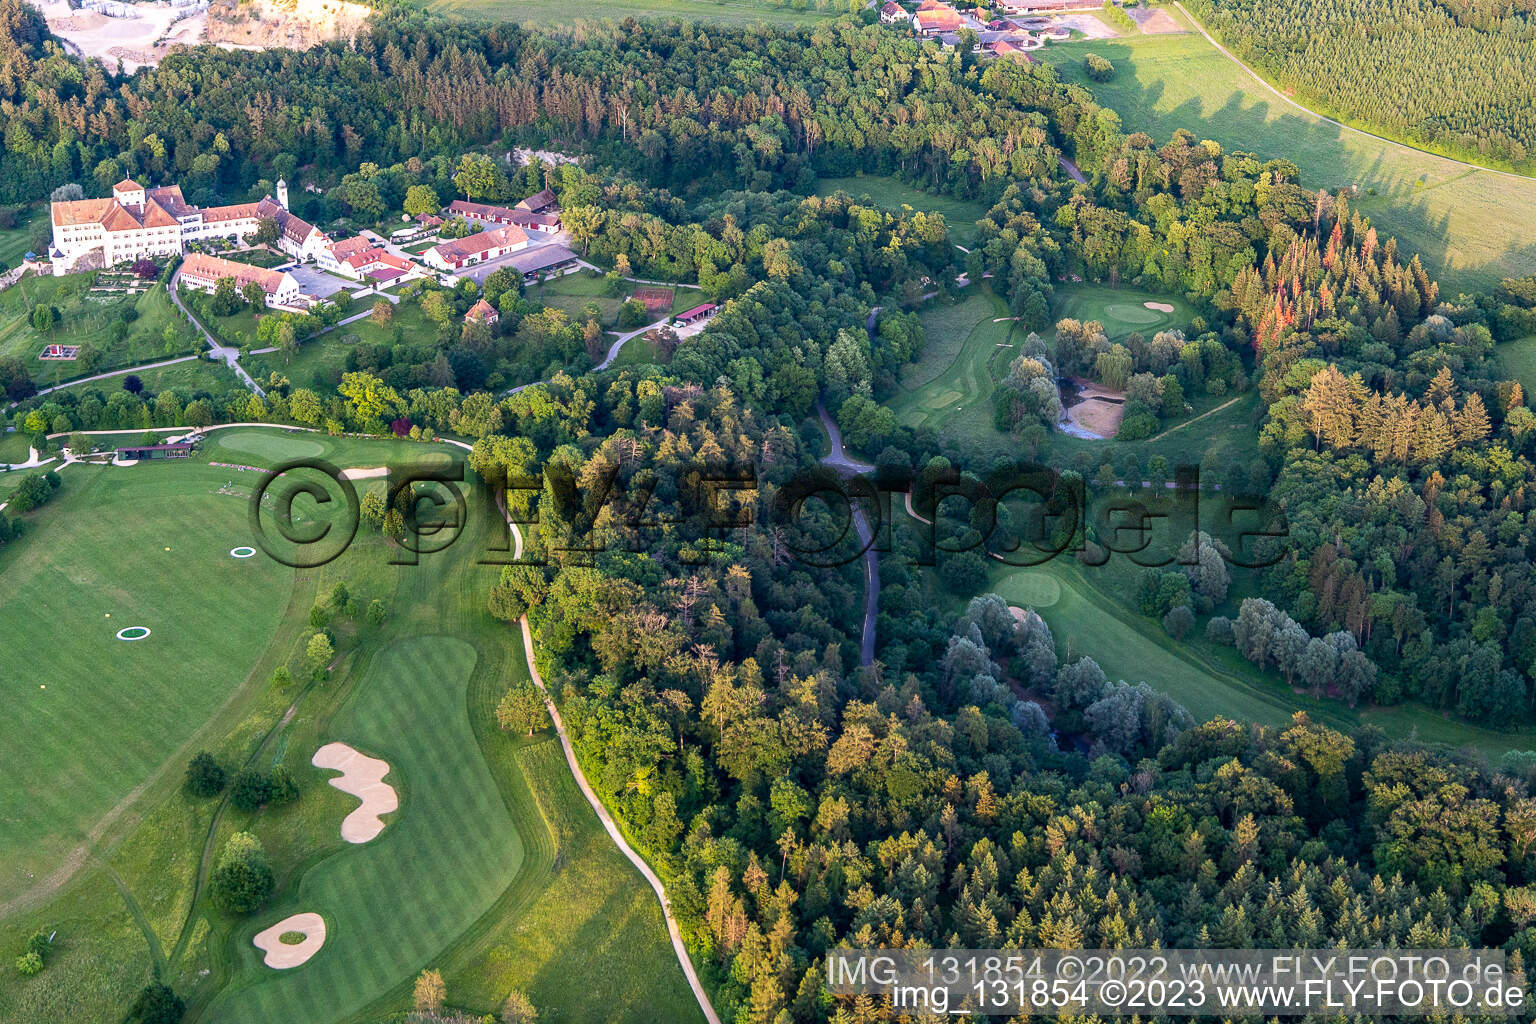 Der Country Club Schloss Langenstein - Der Golfplatz am Bodensee in Orsingen-Nenzingen im Bundesland Baden-Württemberg, Deutschland aus der Drohnenperspektive